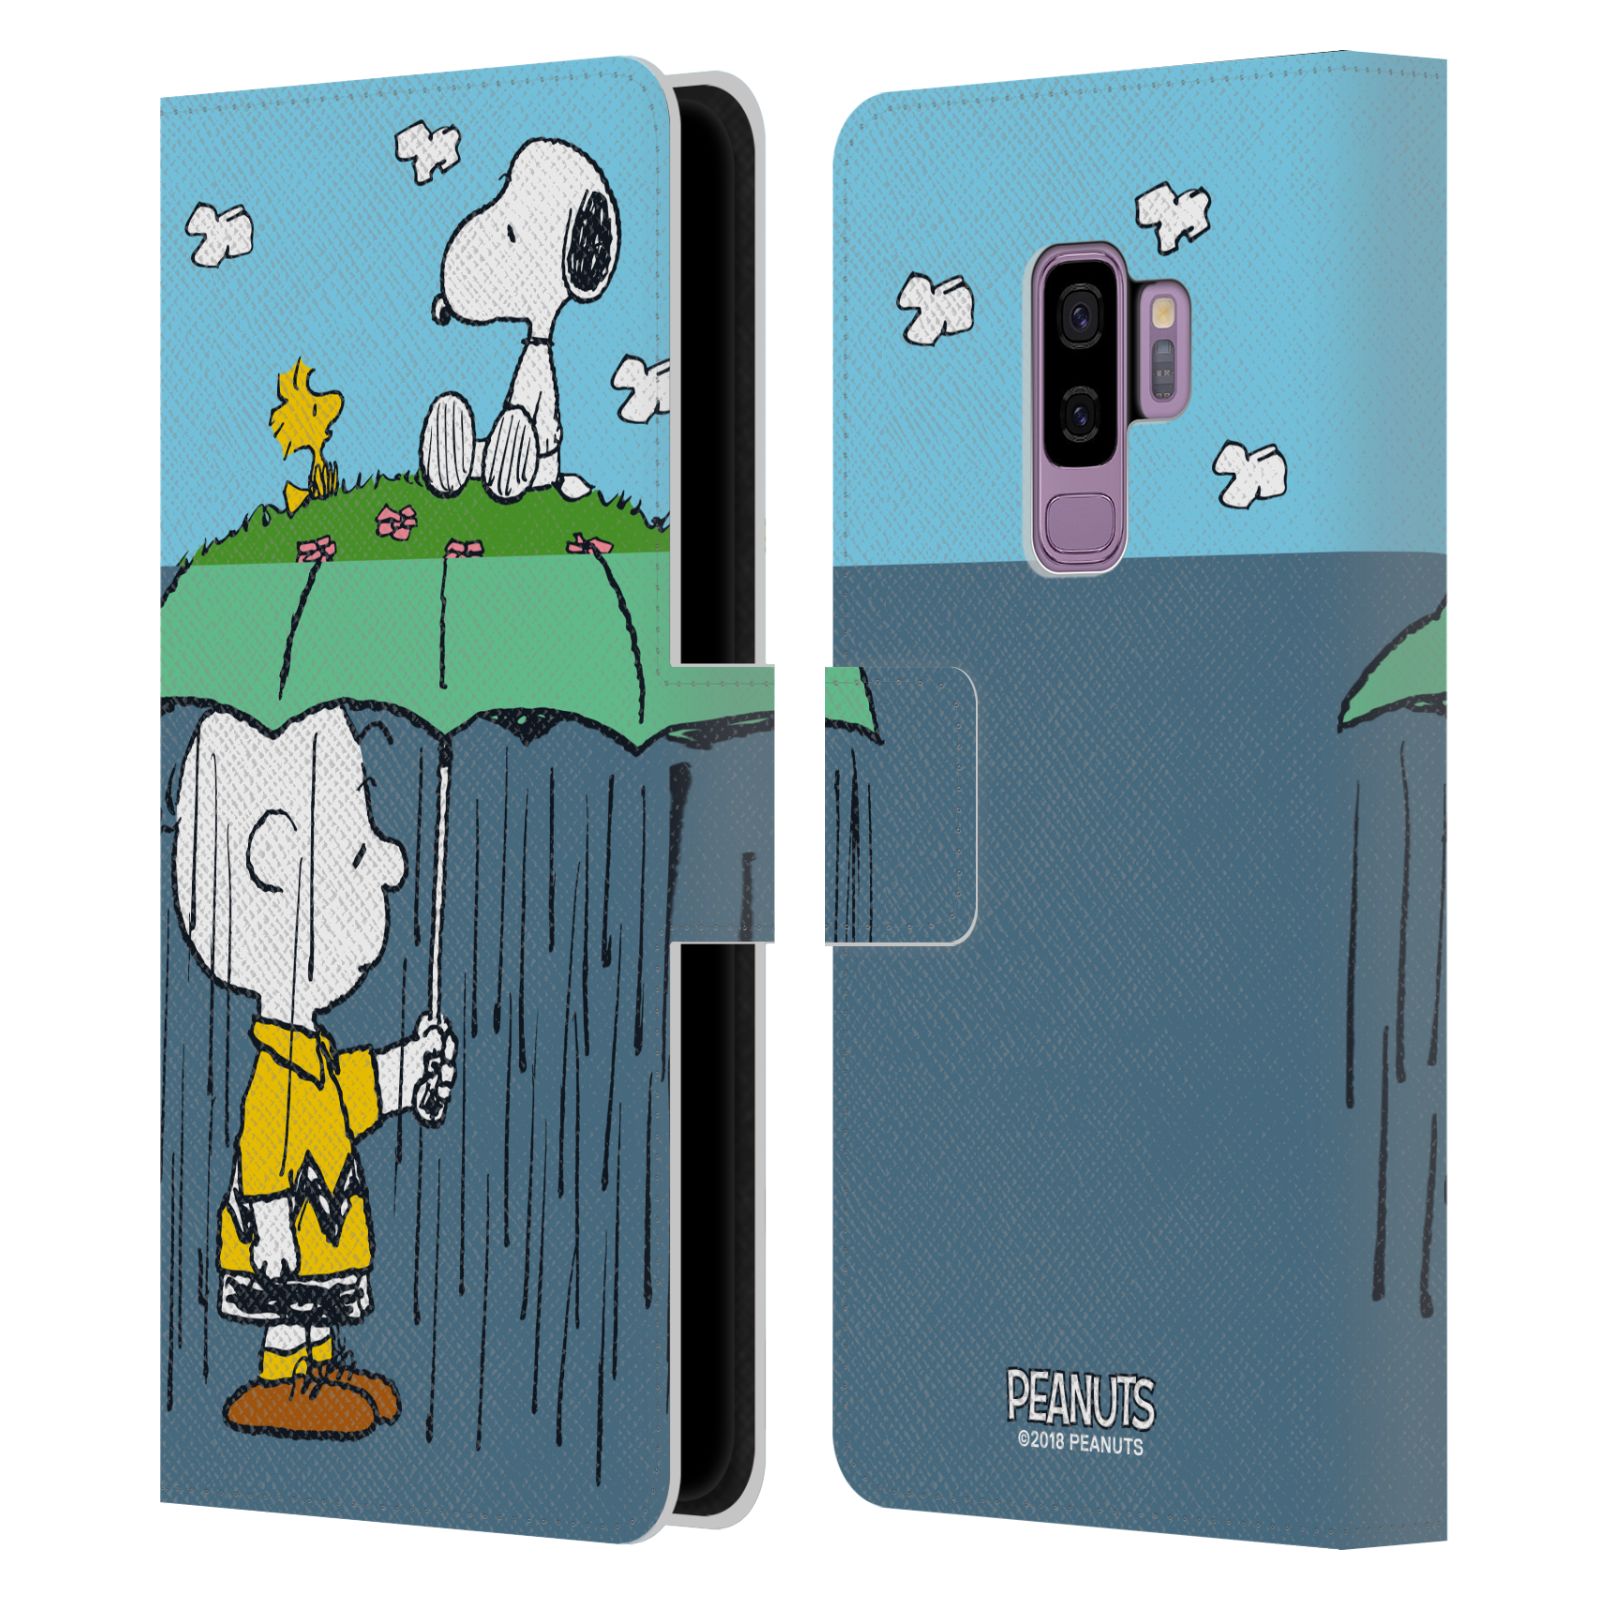 Pouzdro na mobil Samsung Galaxy S9 Plus - Head Case - Peanuts - Snoopy, Charlie a ptáček Woodstock